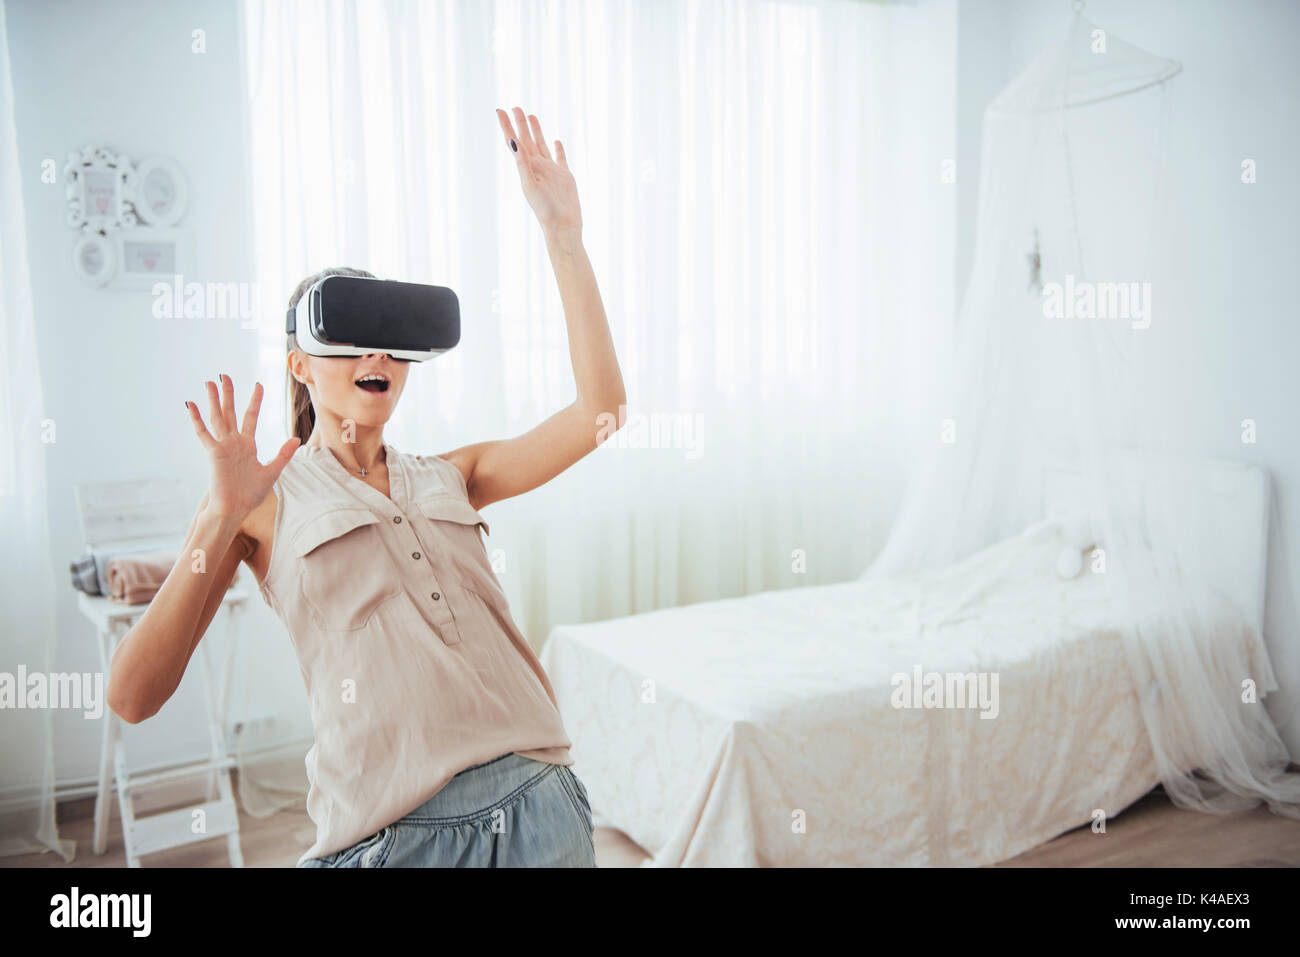 La mujer obtiene la experiencia de utilizar gafas-vr casco de realidad virtual en un bright studio Foto de stock